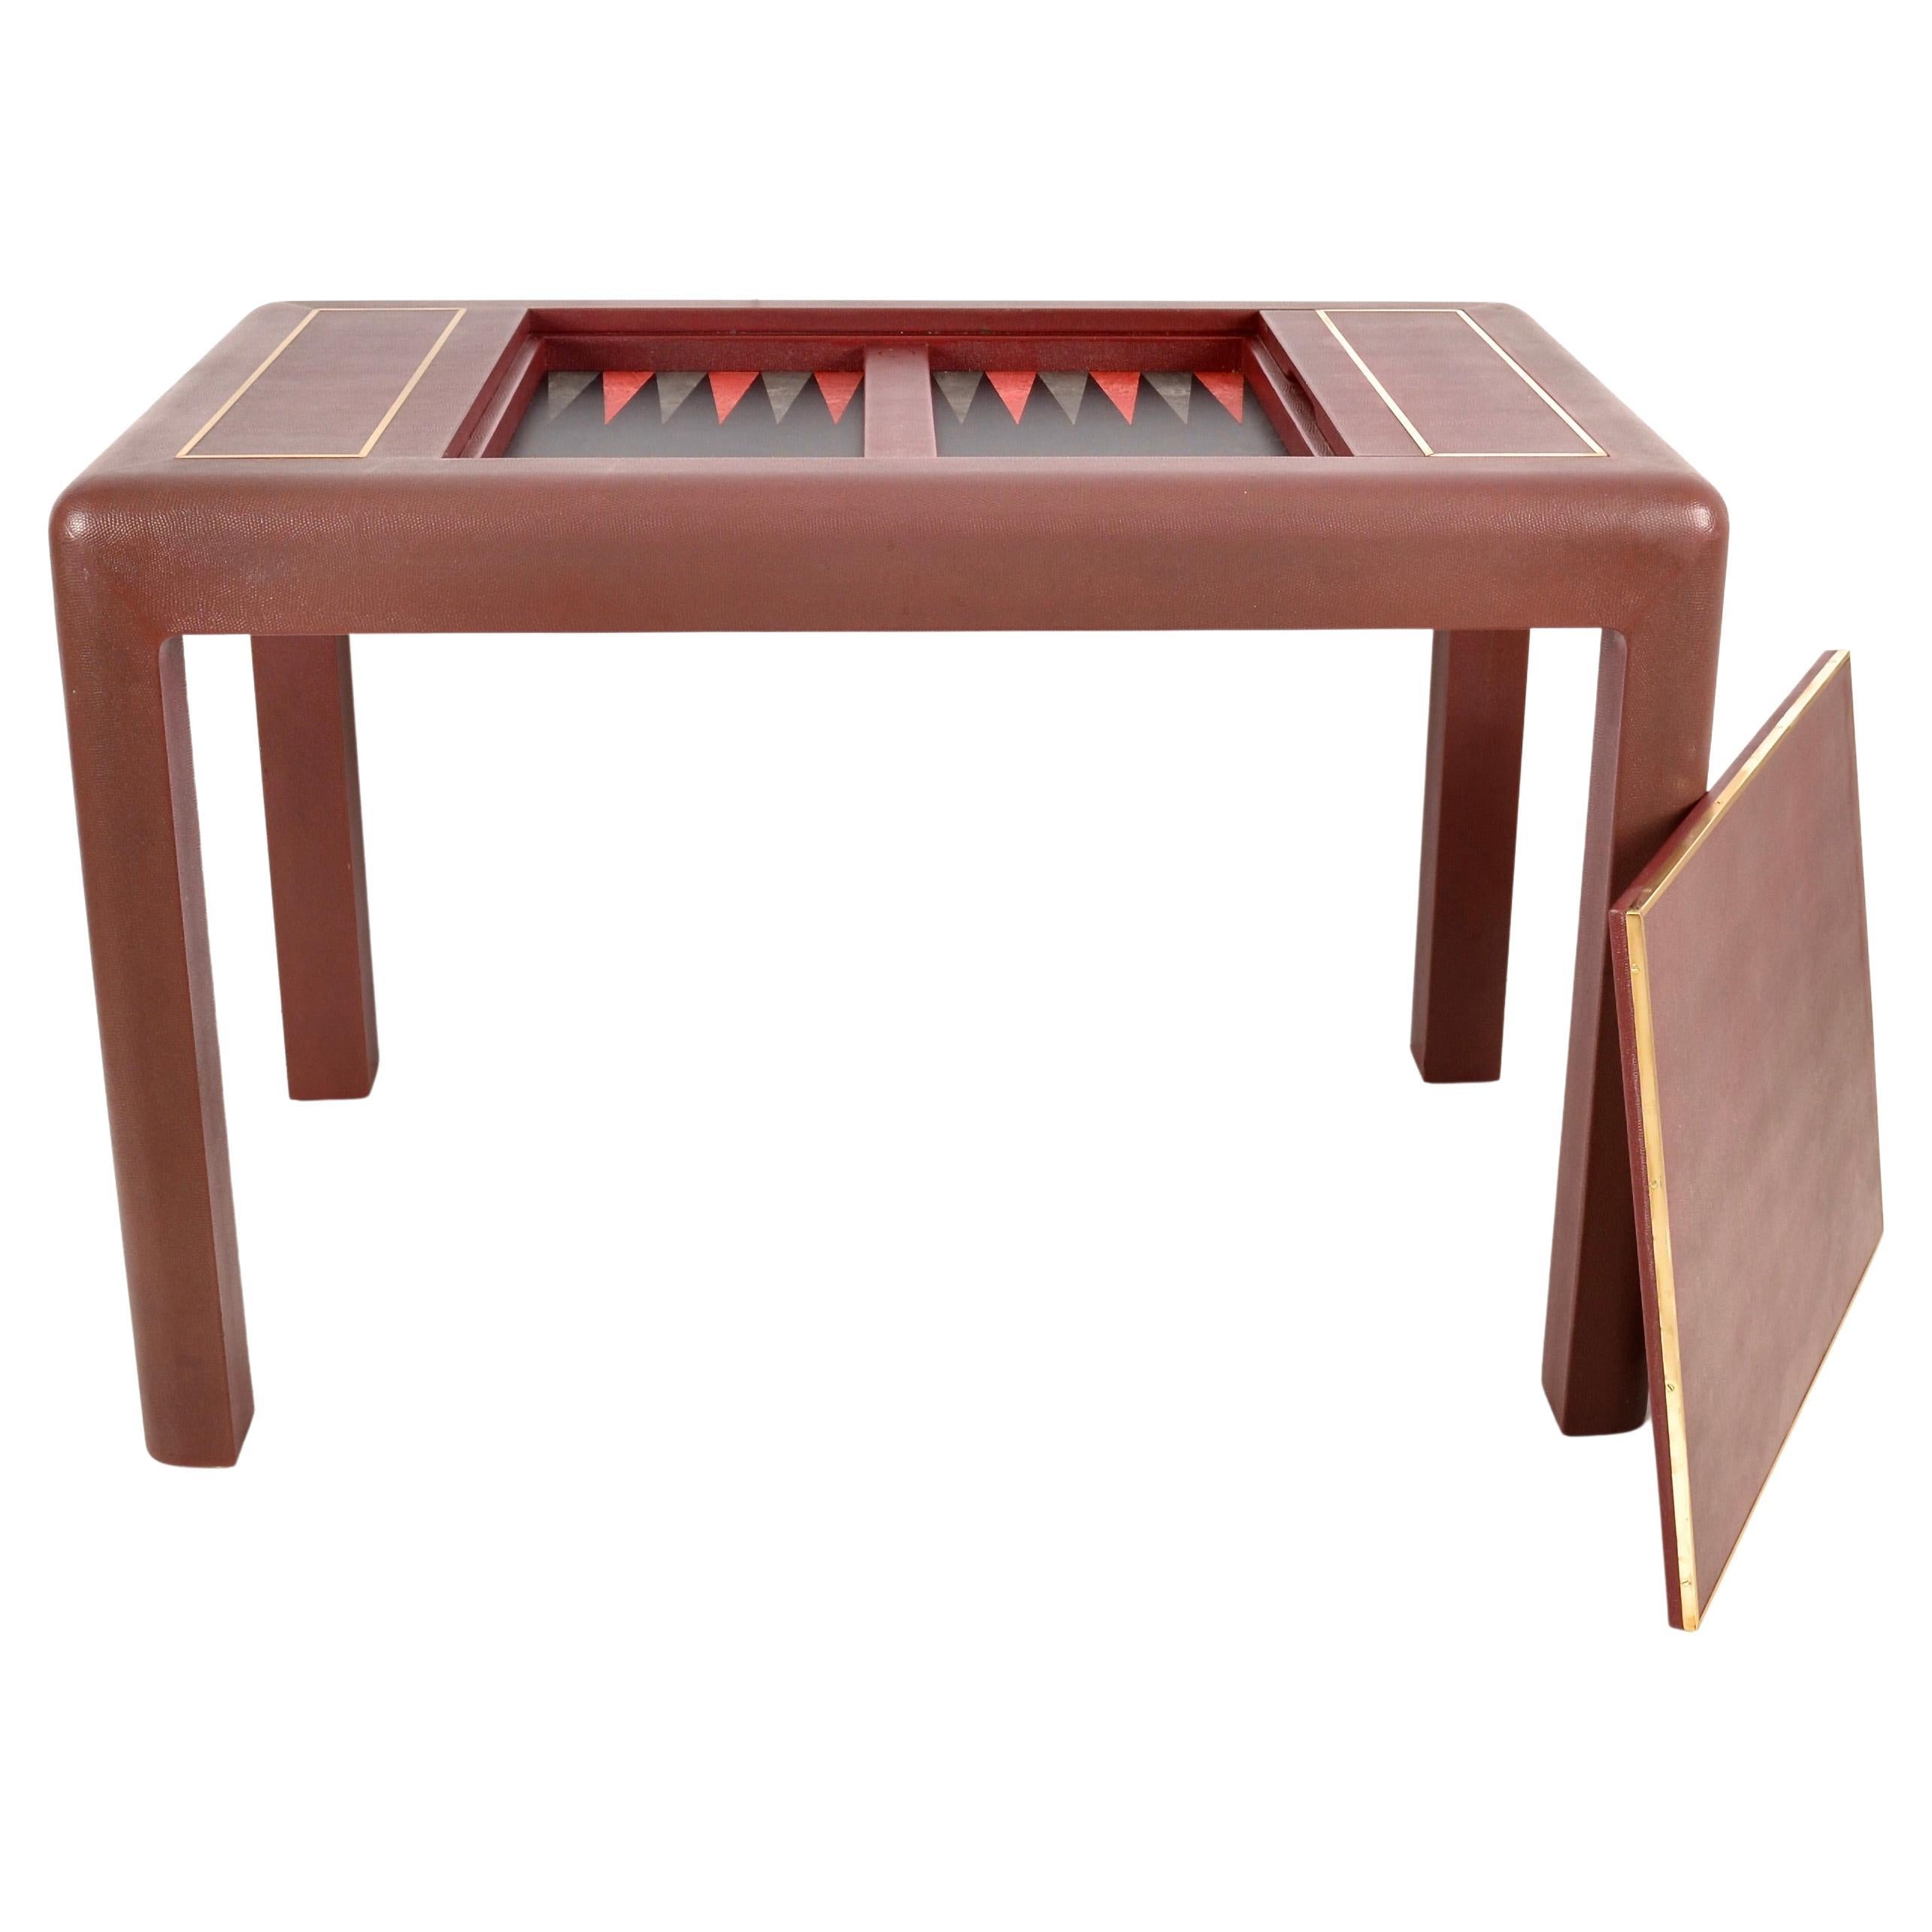 Karl Springer Leather Clad Backgammon Table, Signed 1987